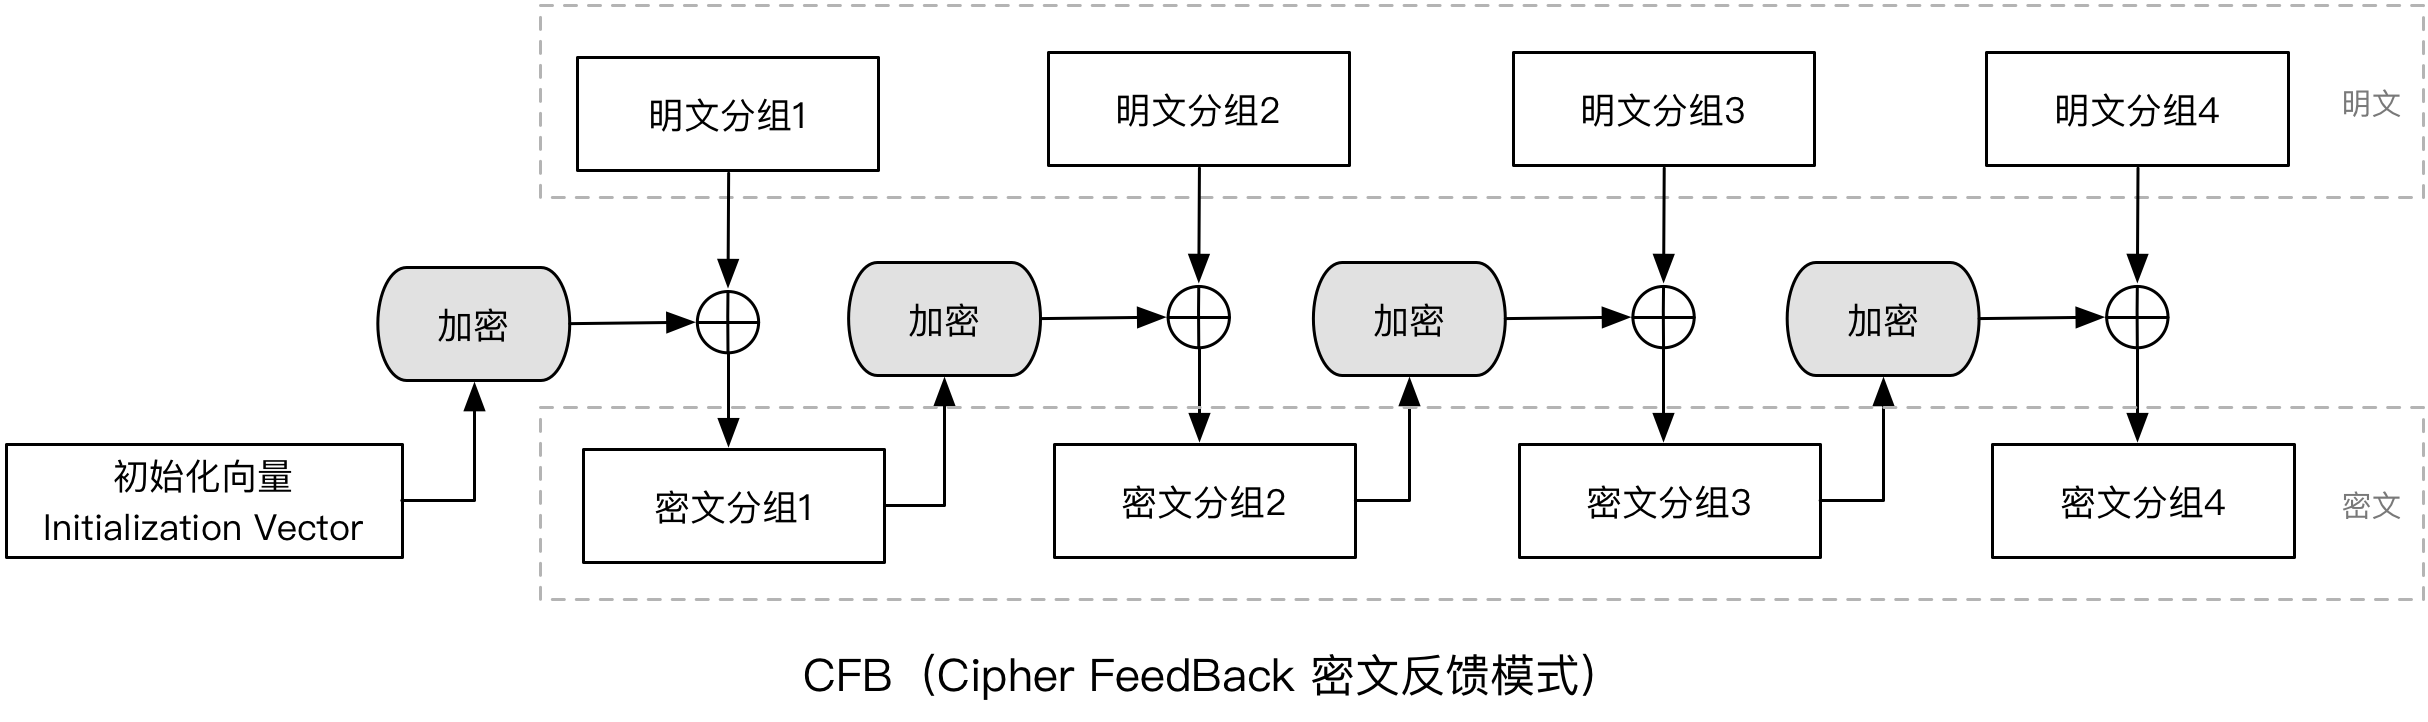 密码技术-CFB分组.png